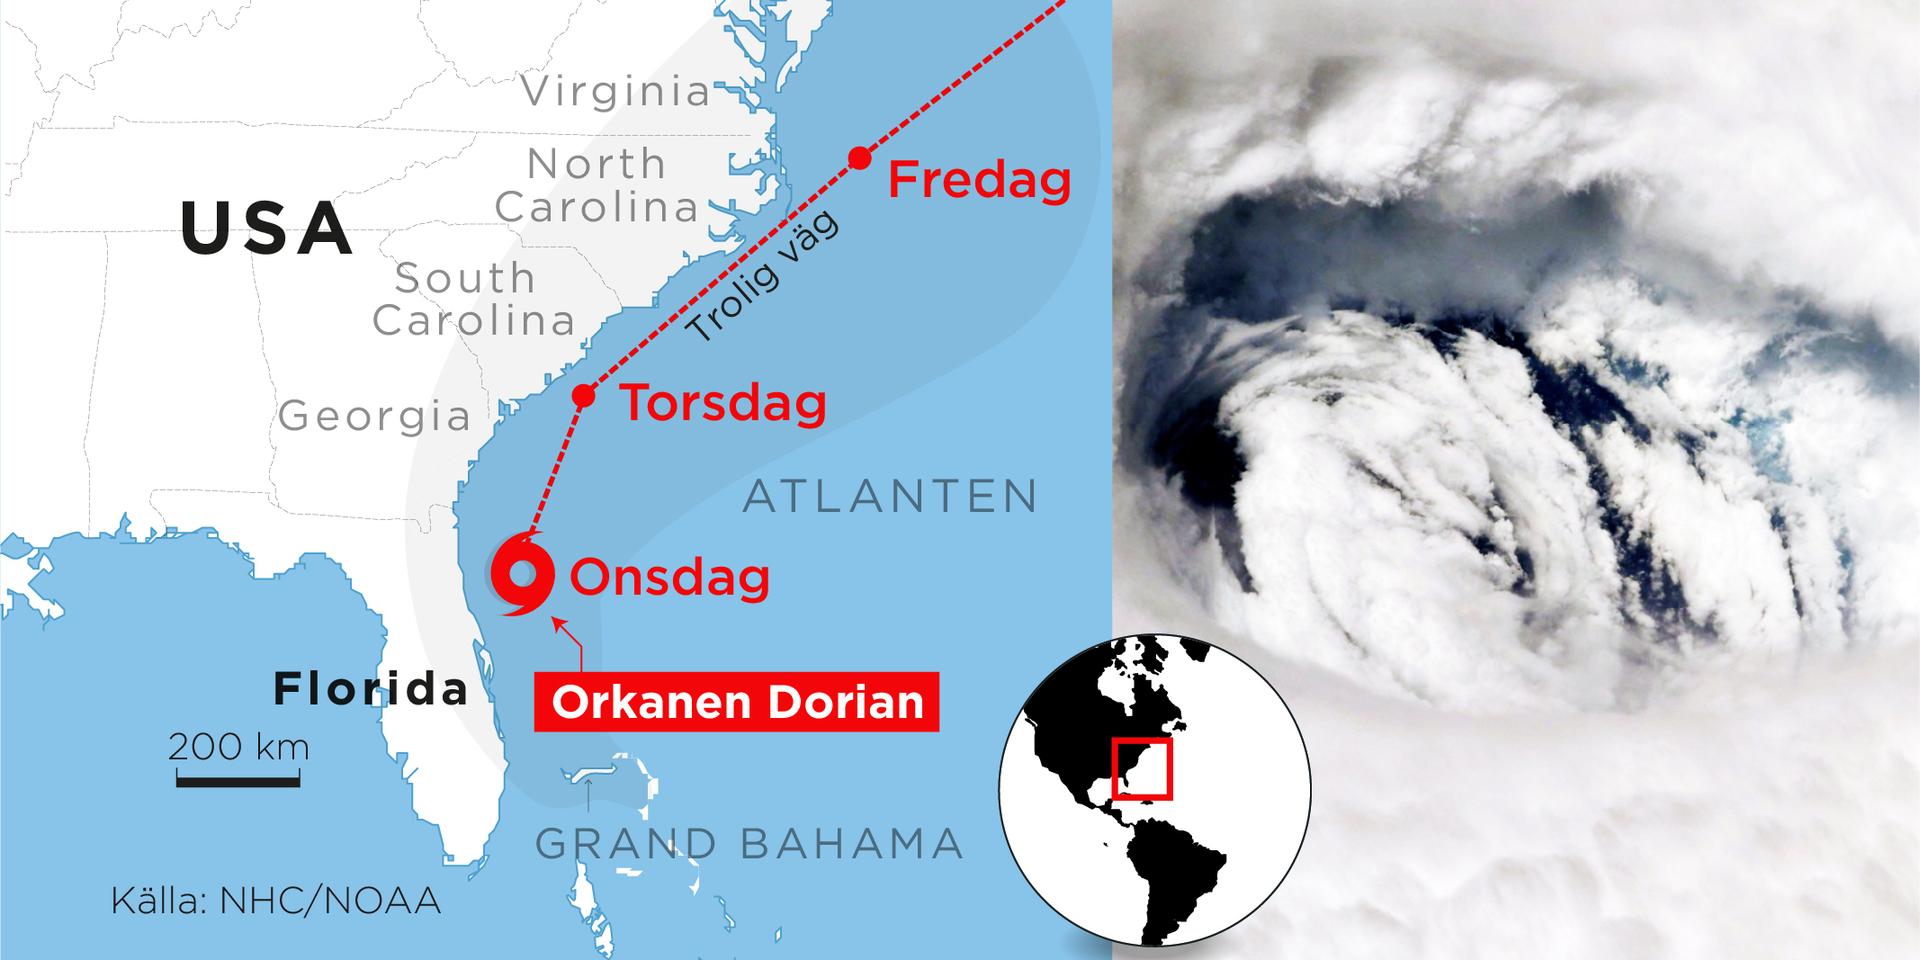 Just nu befinner sig Dorian utanför norra Floridas östkust, och förväntas röra sig uppåt längs med kusten.